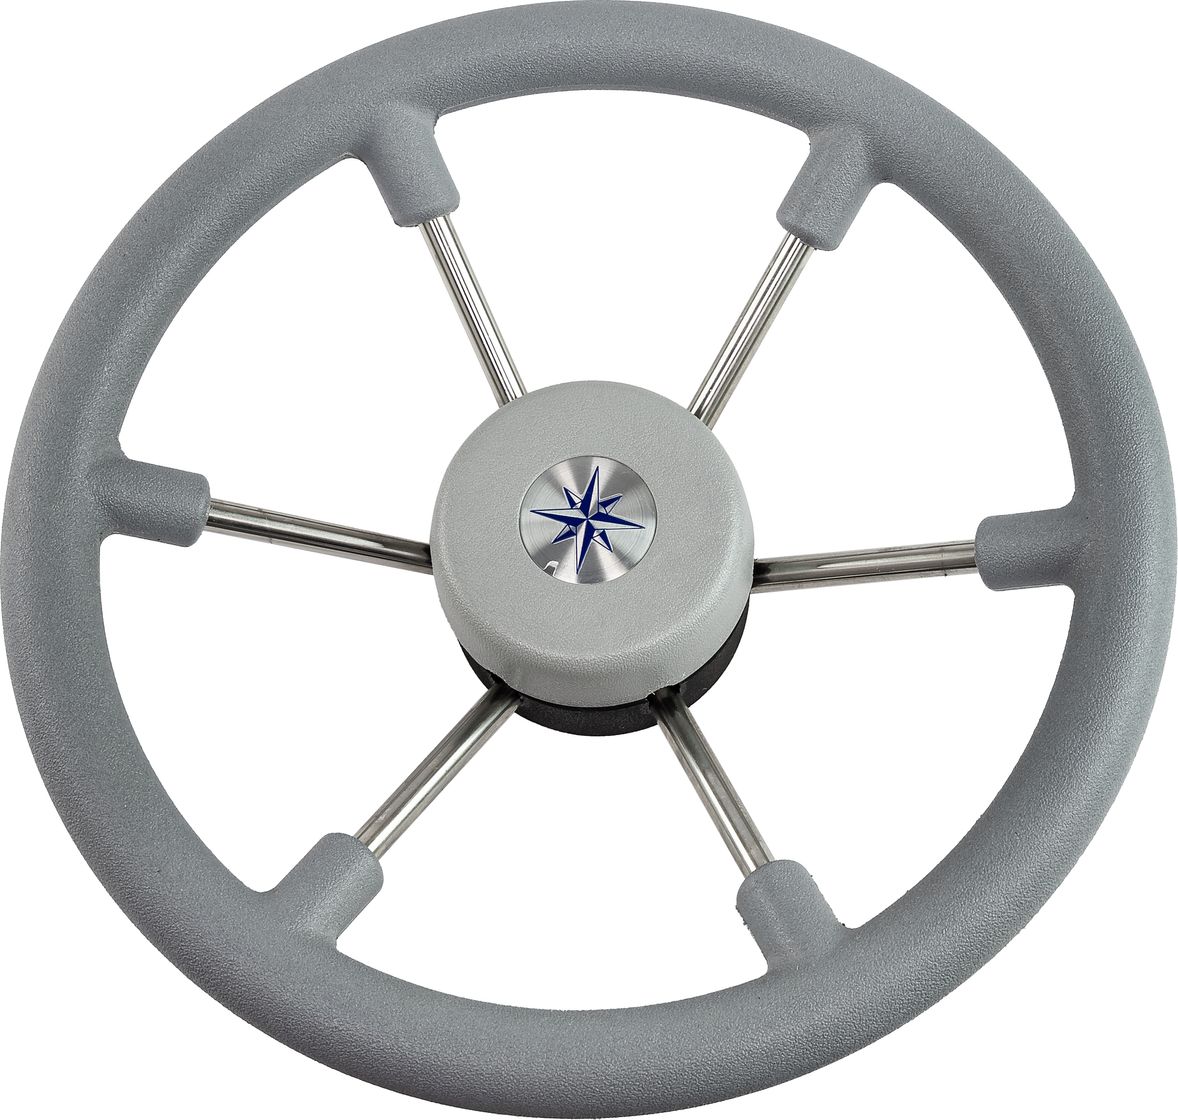 Рулевое колесо LEADER TANEGUM серый обод серебряные спицы д. 330 мм VN7330-03 заглушка декоративная для рулевых колес leader tanegum серая vn00010 03